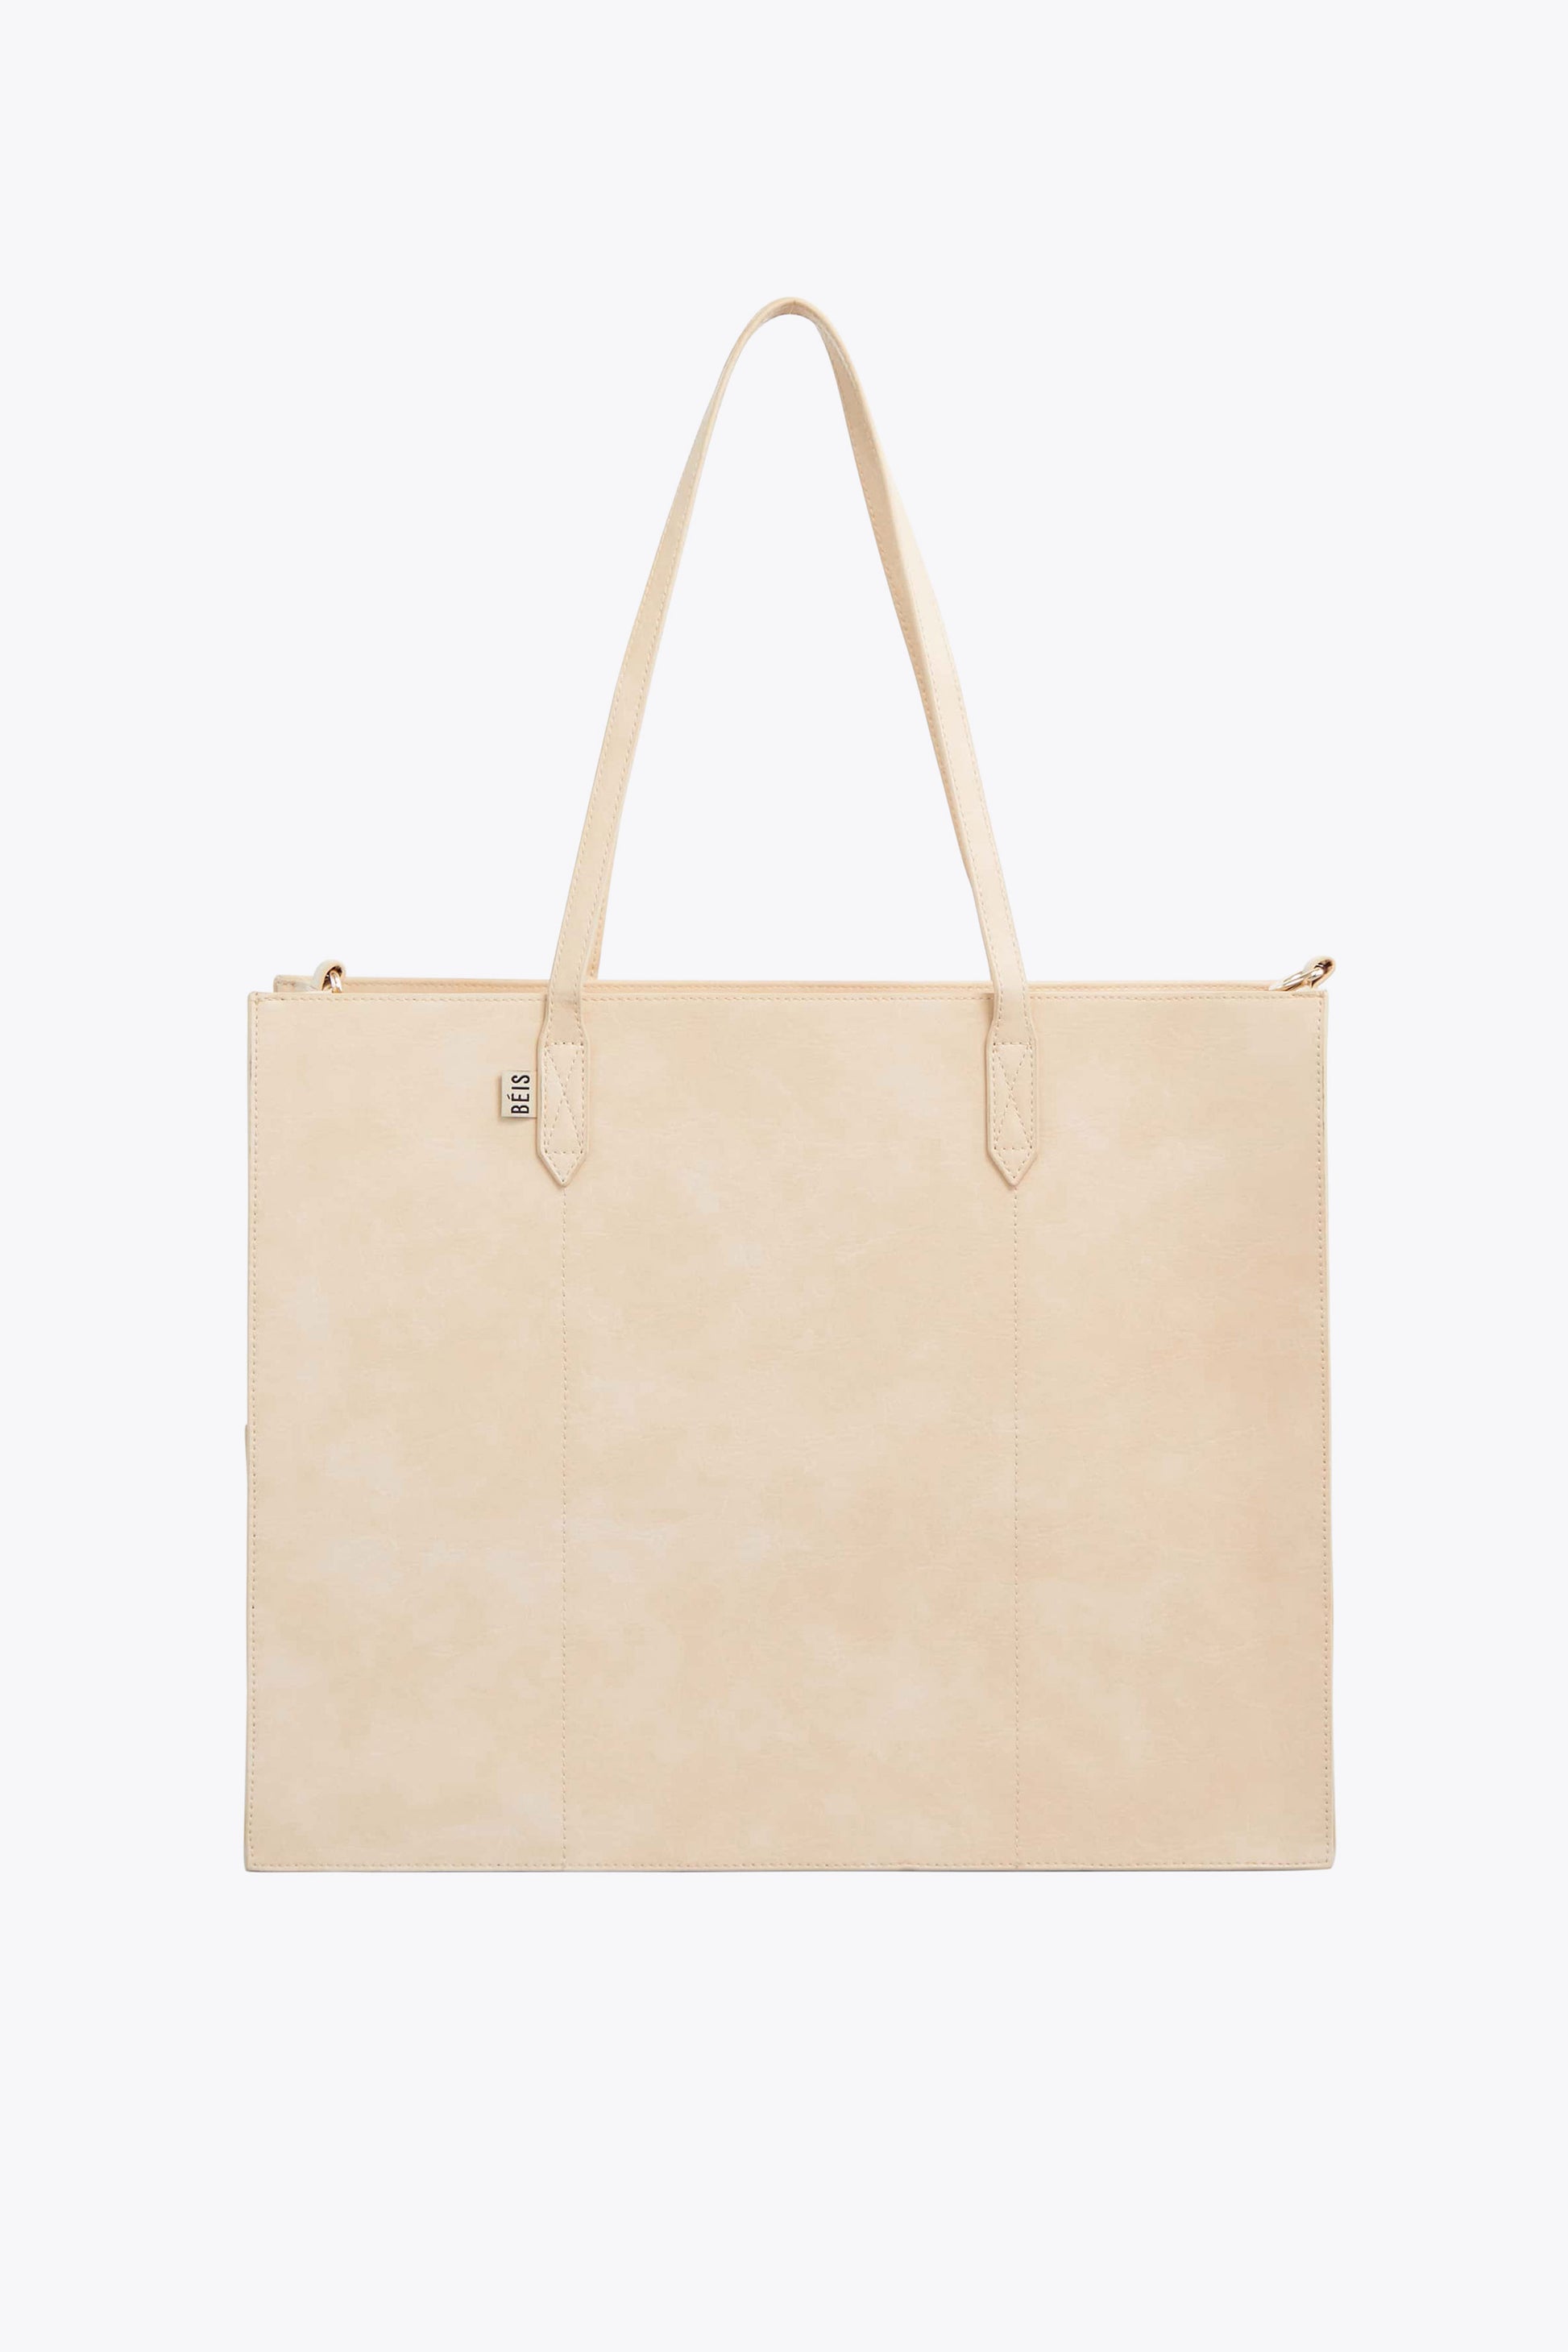 Tote Bags, Women's Shopper Bags